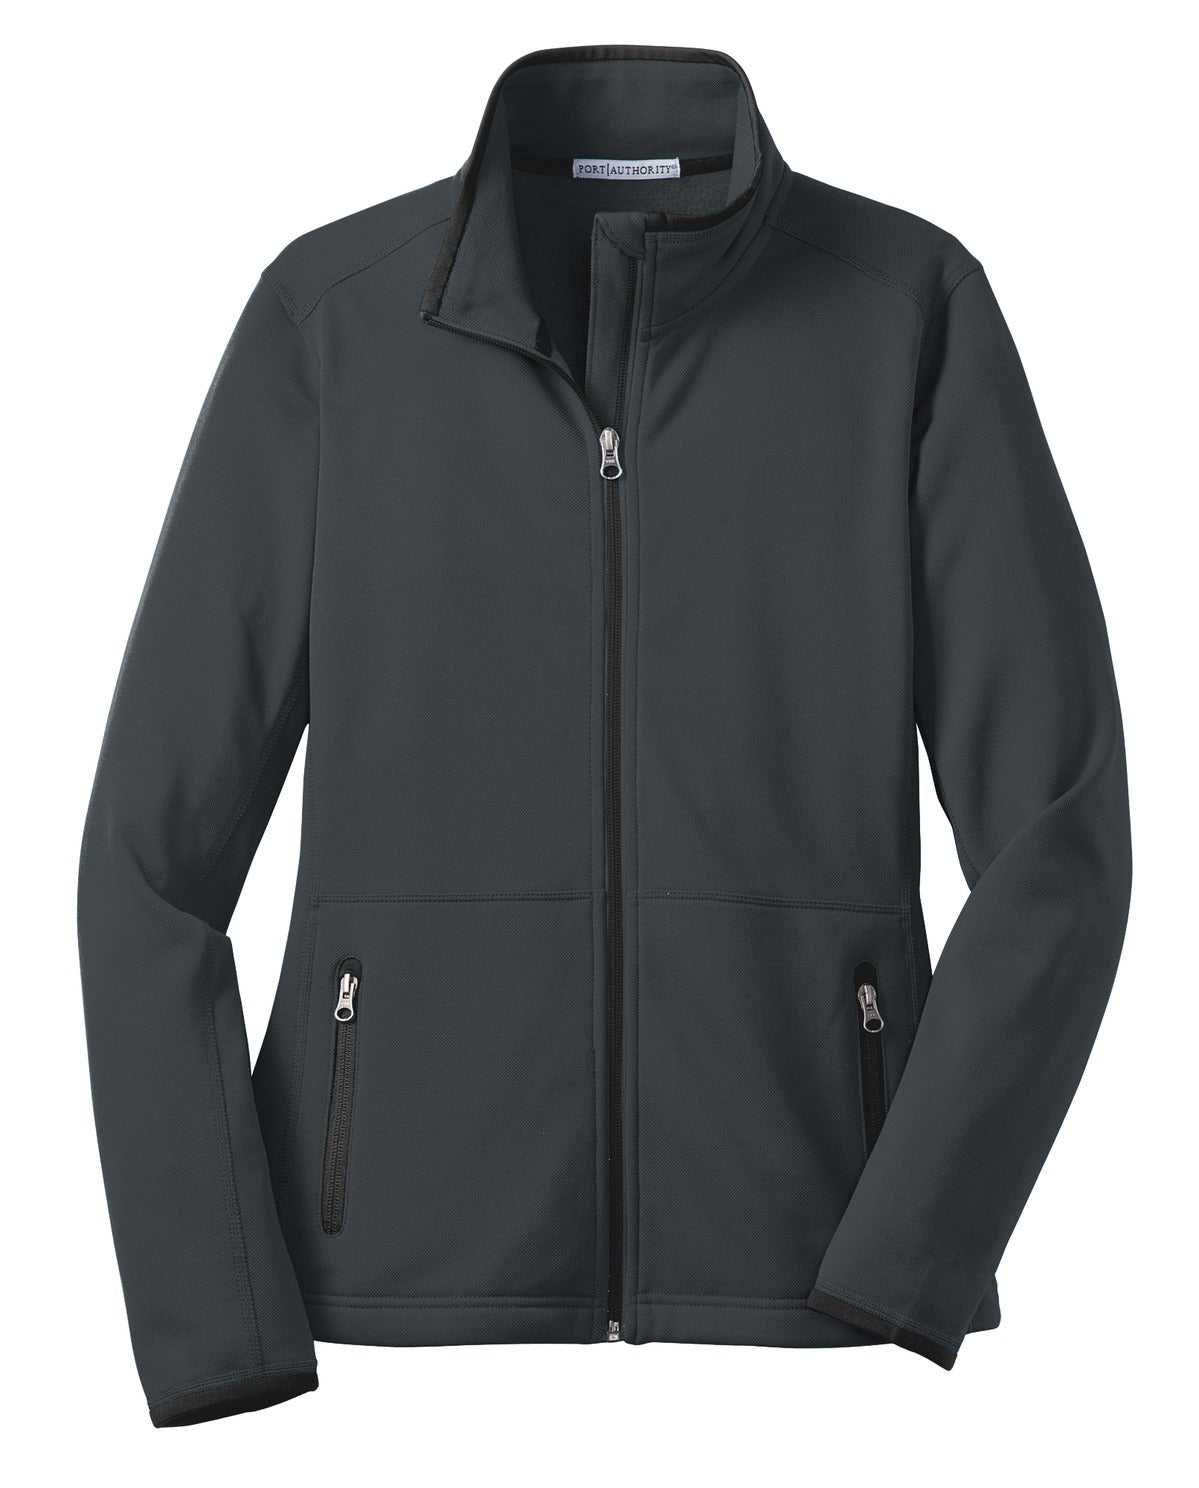 Port Authority L222 Ladies Pique Fleece Jacket - Graphite - HIT a Double - 5